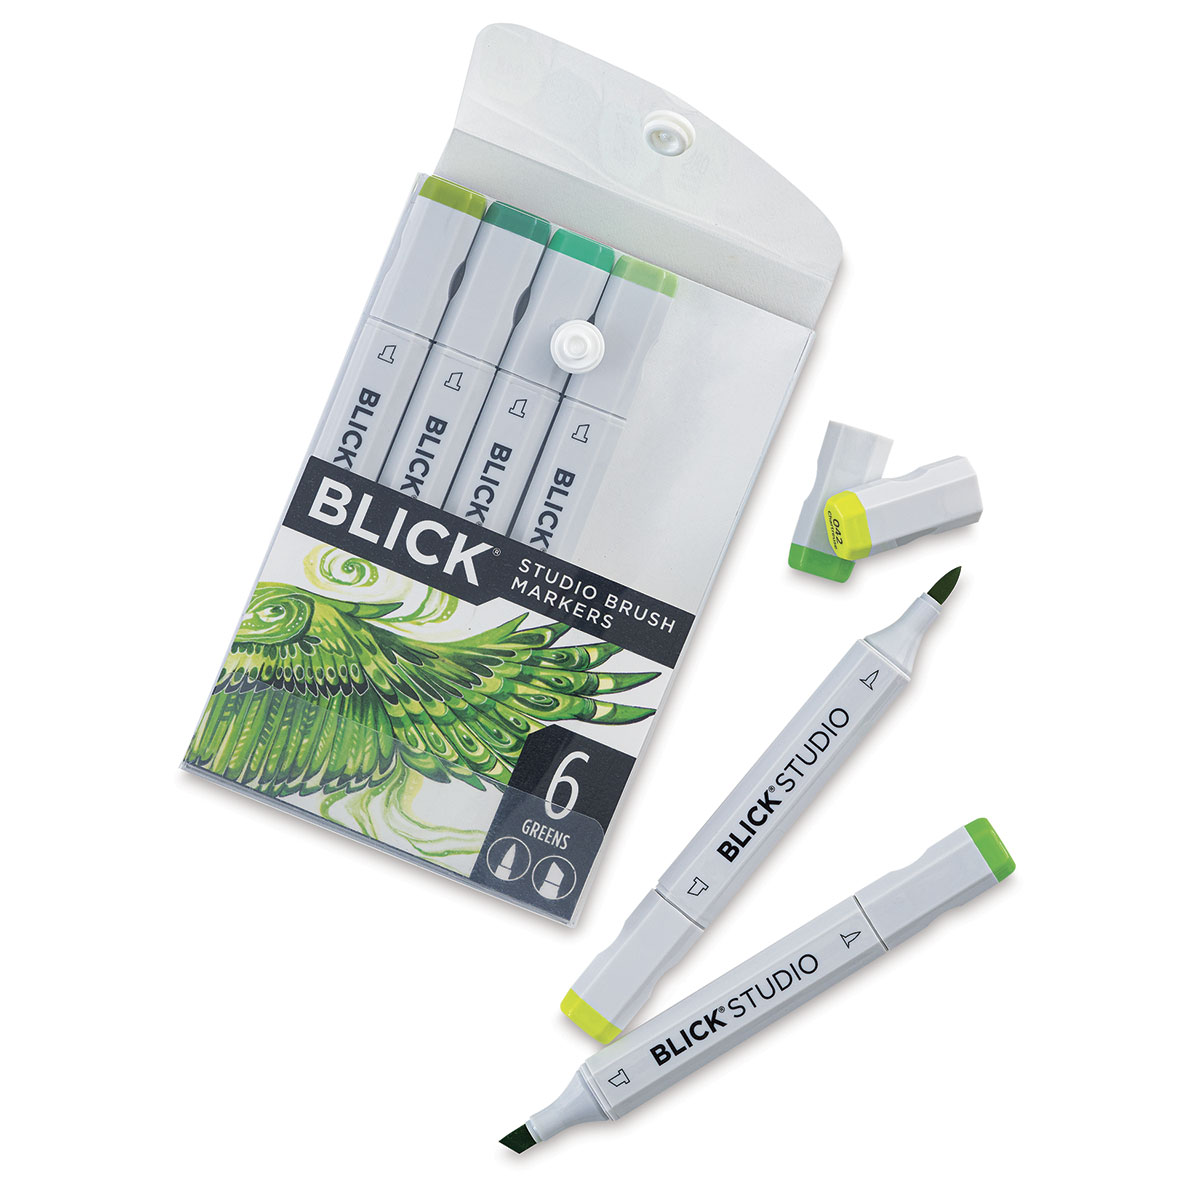 Blick Studio Brush Markers - Set of 144